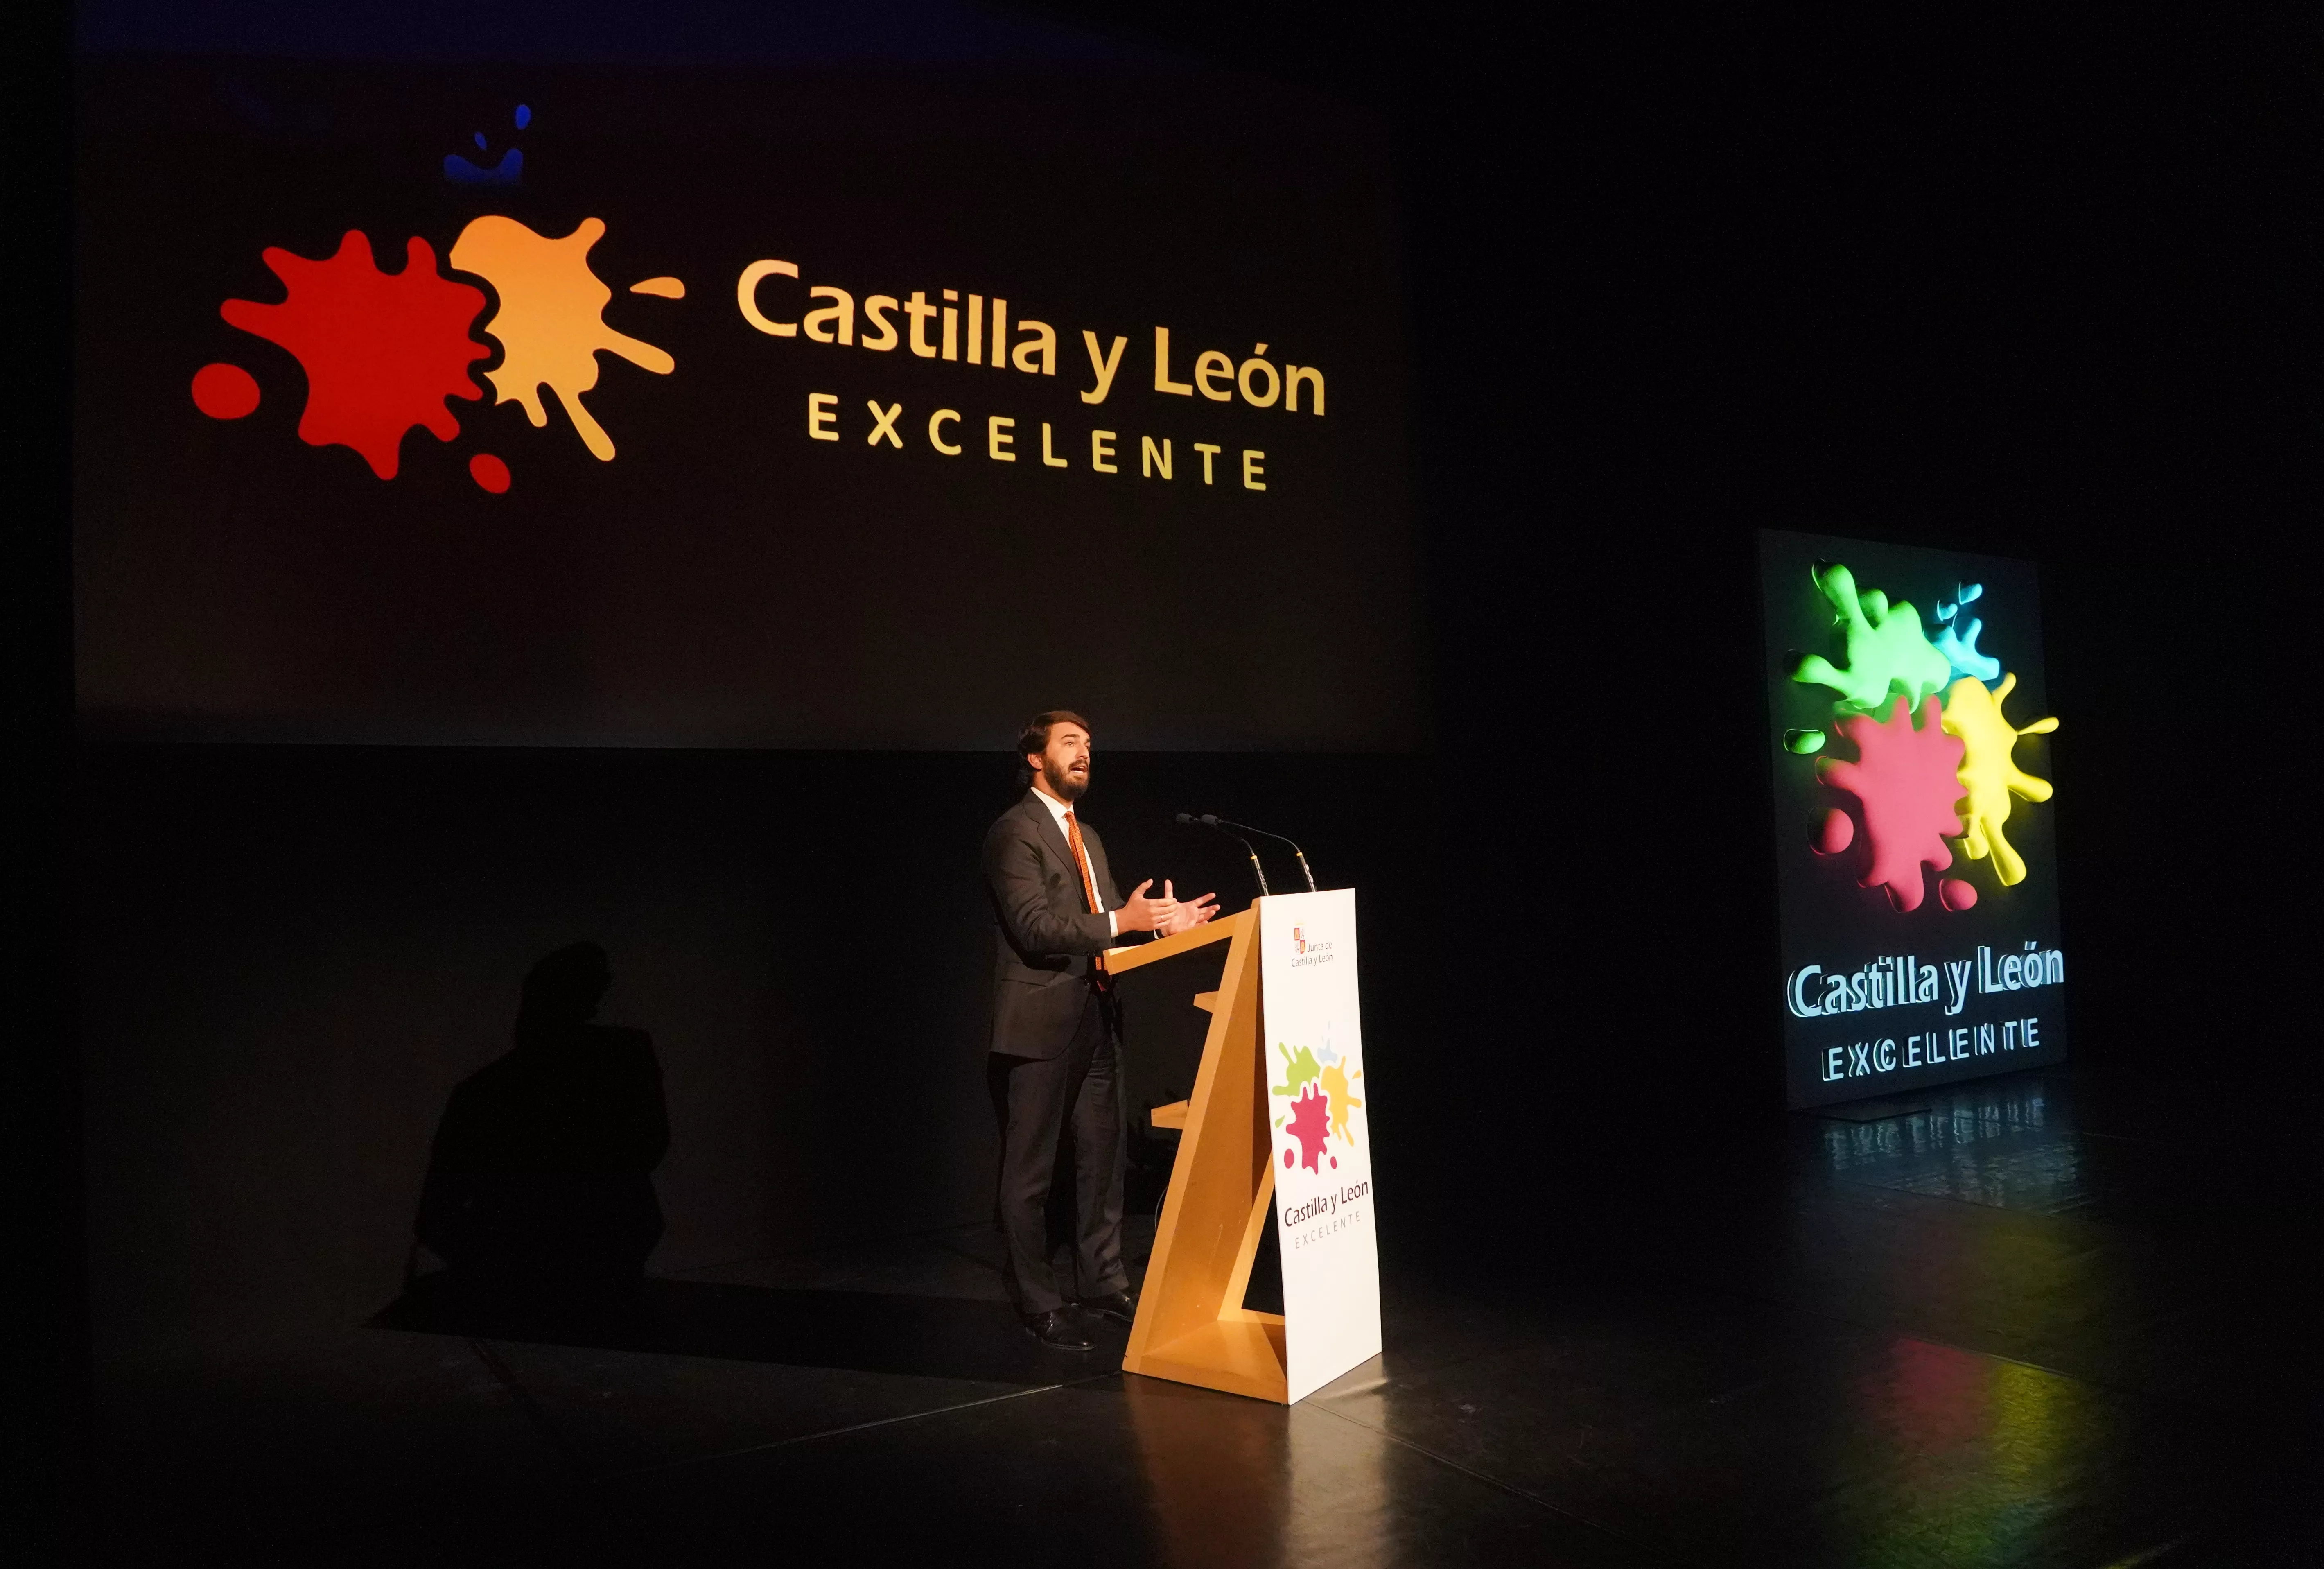 La Junta suspende de forma “inmediata” cualquier uso de la marca ‘Castilla y León Excelente’ y su logo